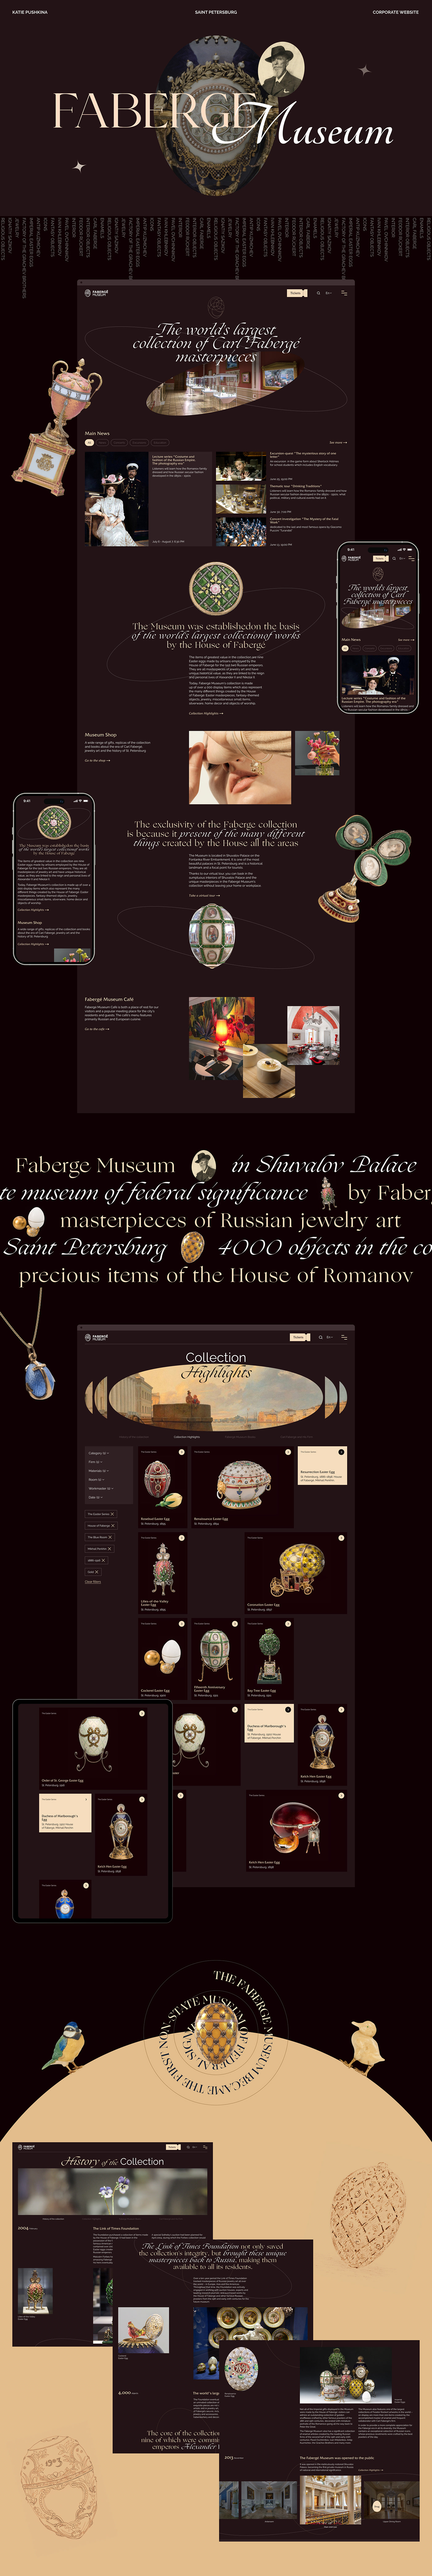 museum art jewelry history uprock Faberge